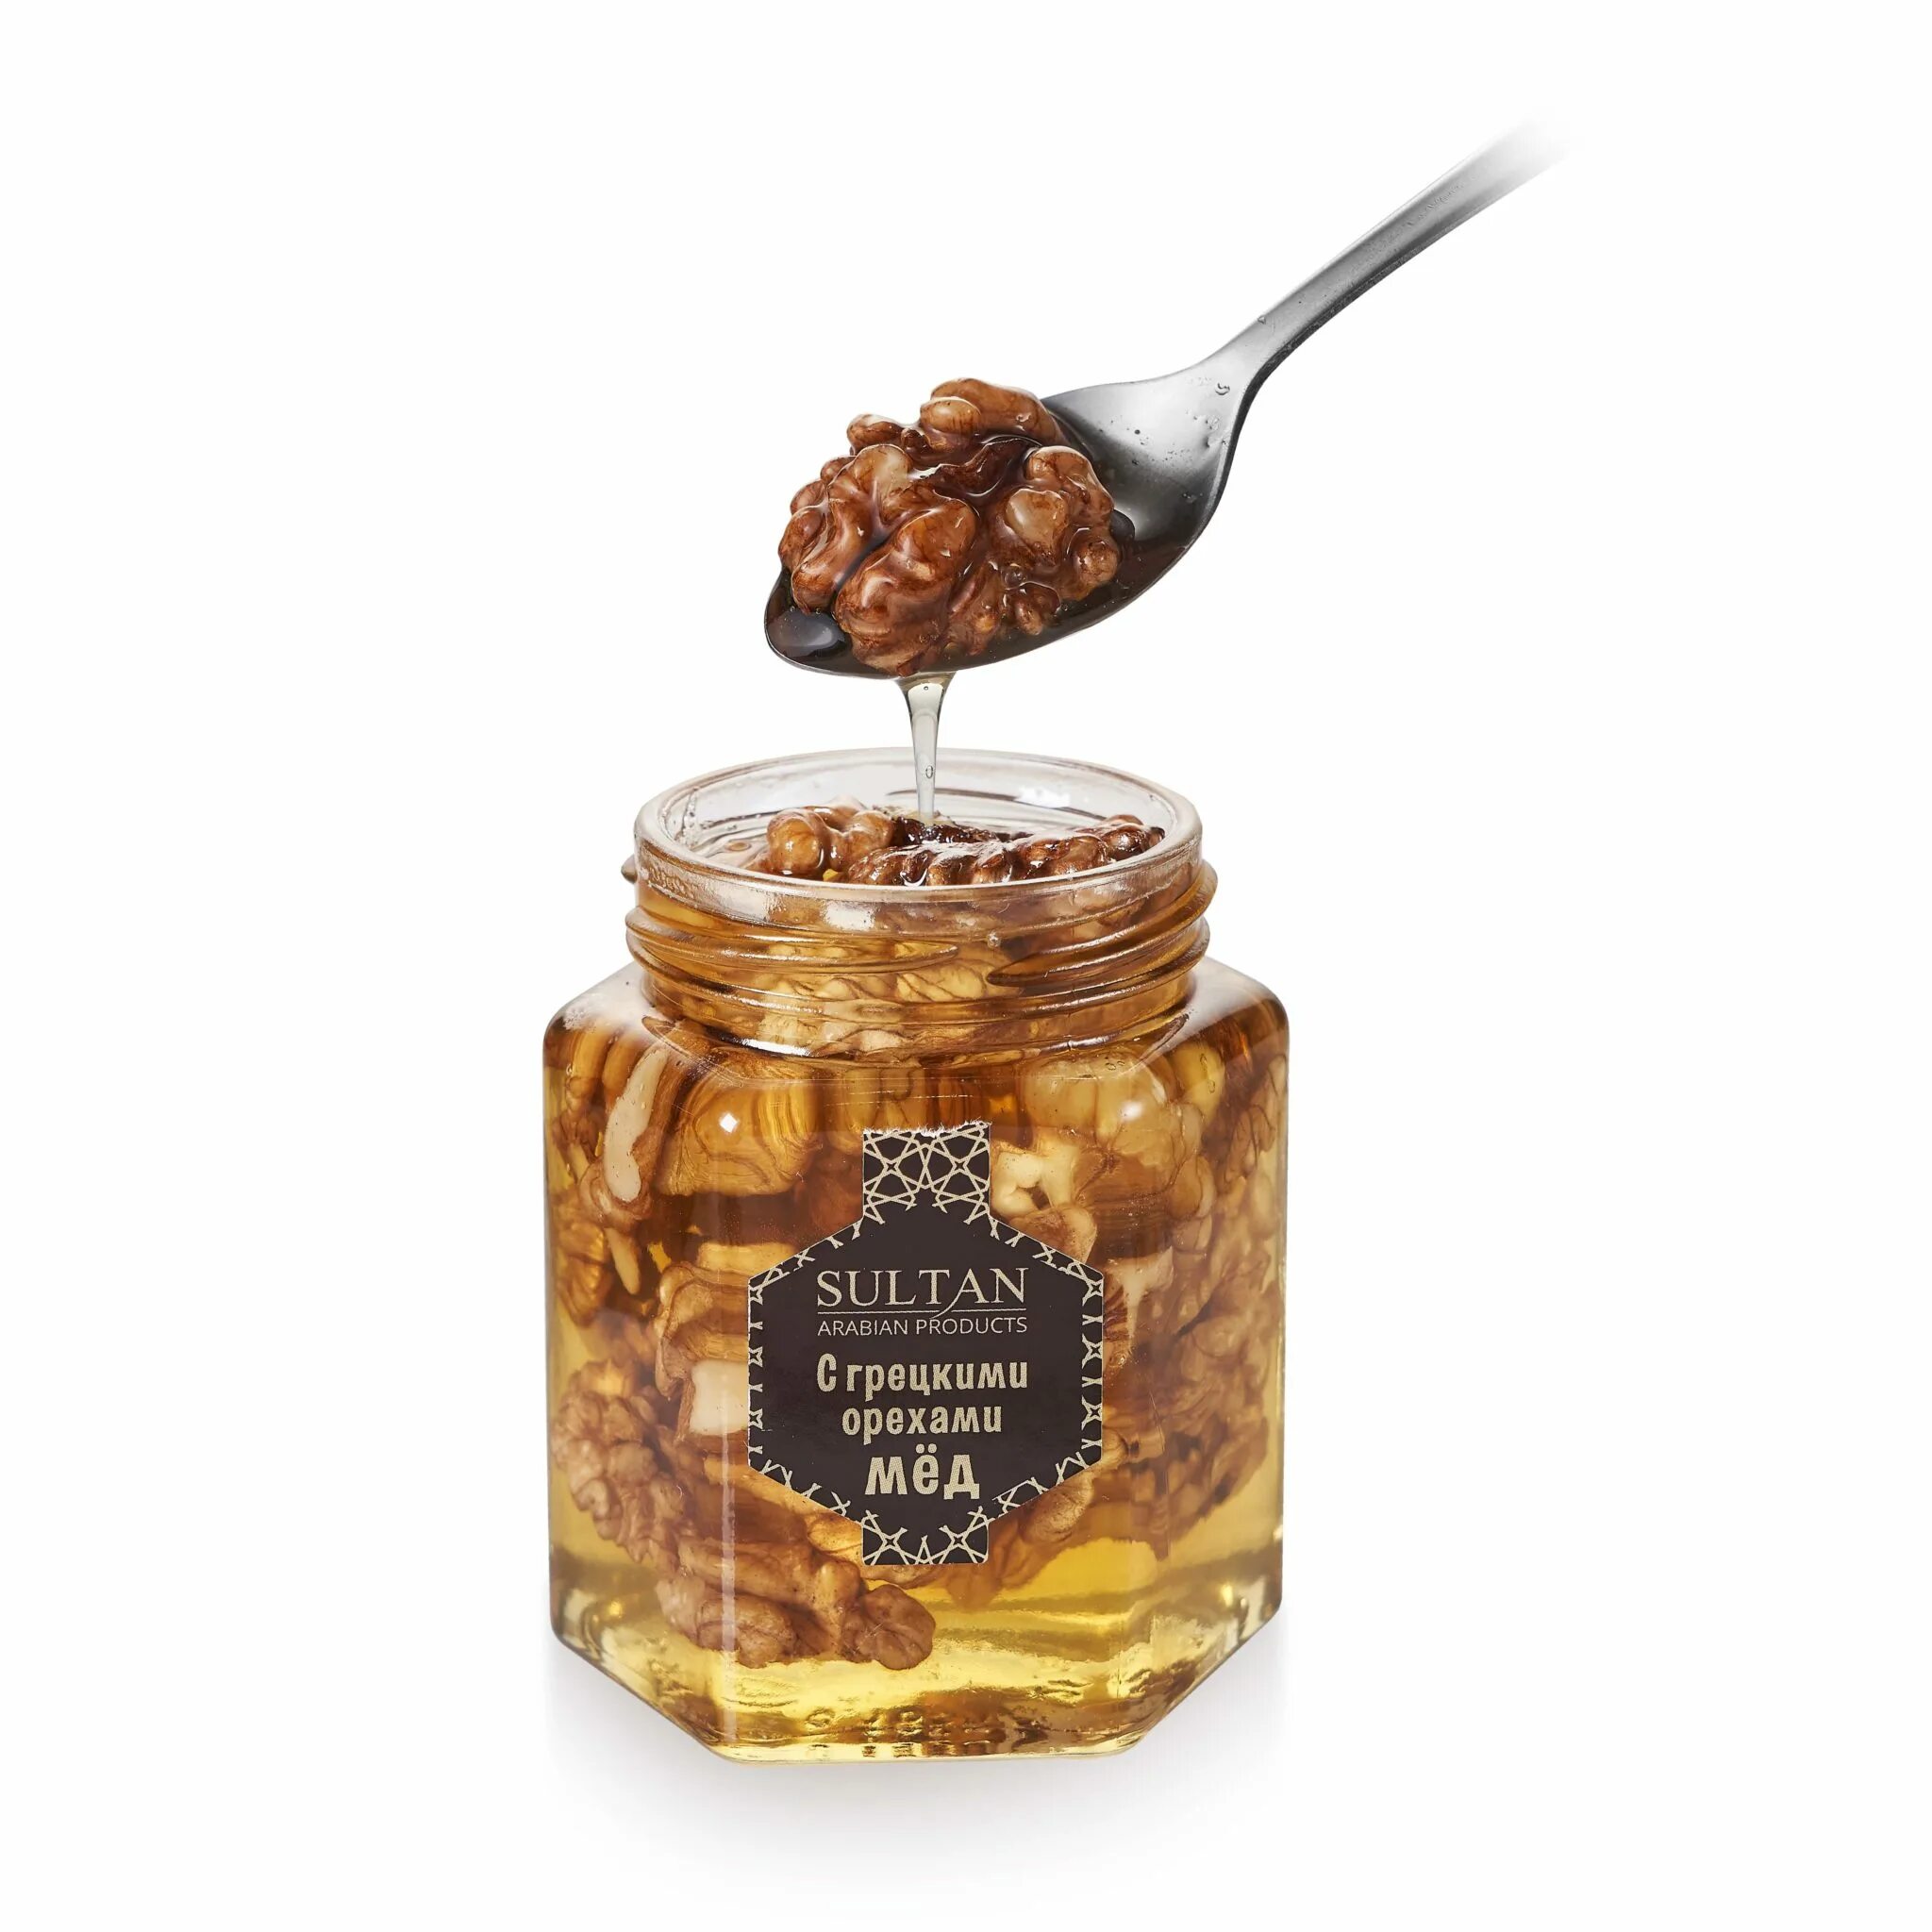 Грецкий мед купить. Мёд с орехом грецким орехом. Мёд <грецкий орех> 240 мл. Sultan мёд с грецким орехом. Sultan Arabian products курага 500 г.